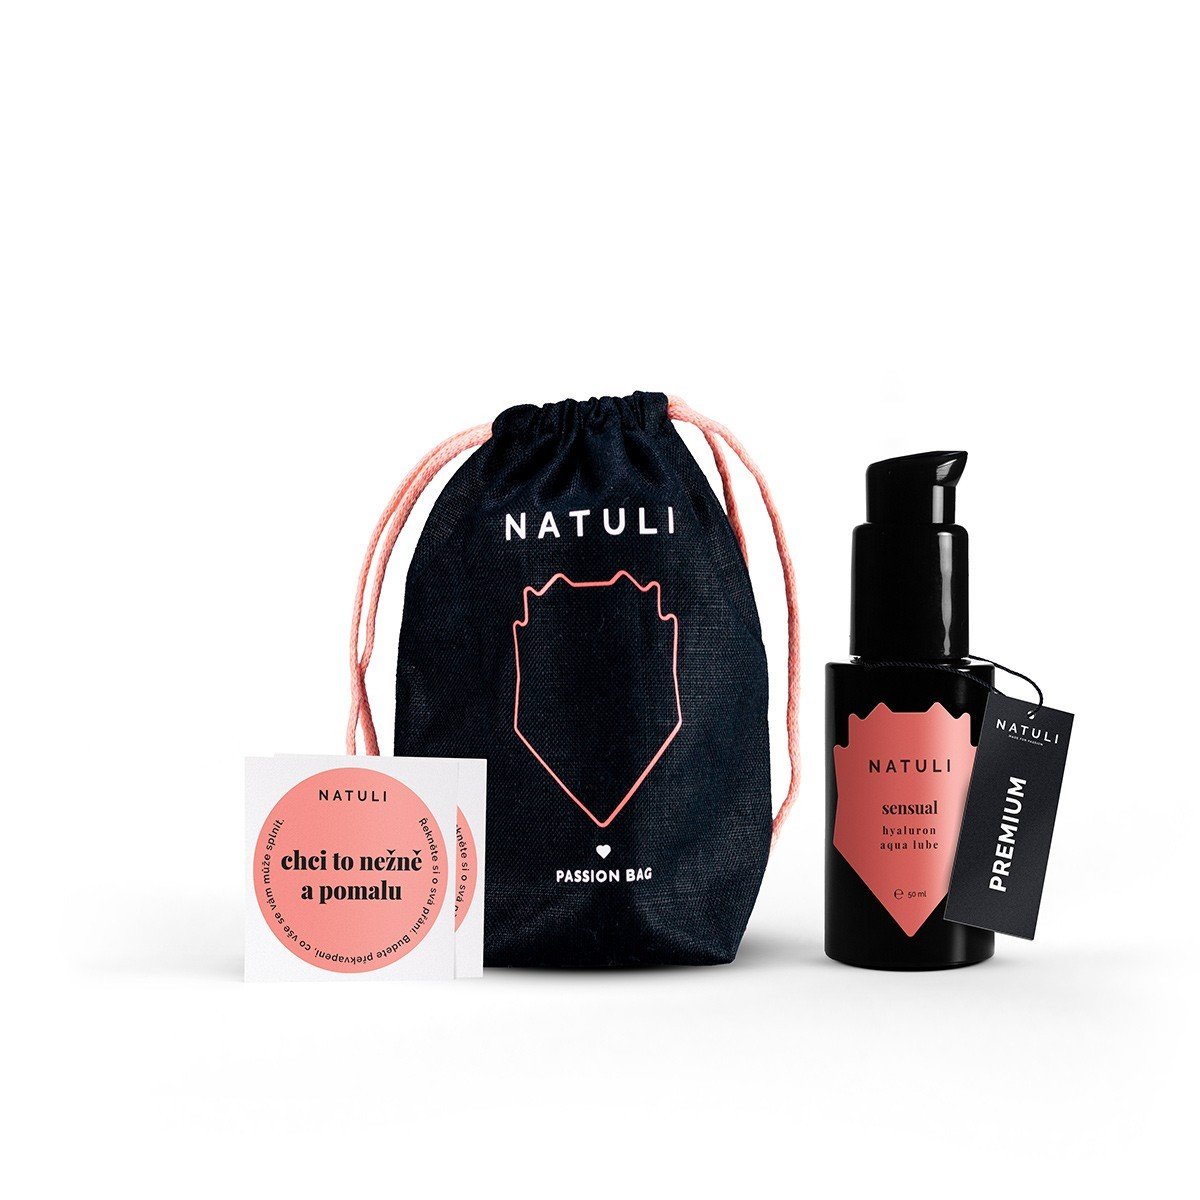 Natuli Premium Sensual Gift 50 ml, lubrikant na vodní bázi pro ženy v dárkovém balení